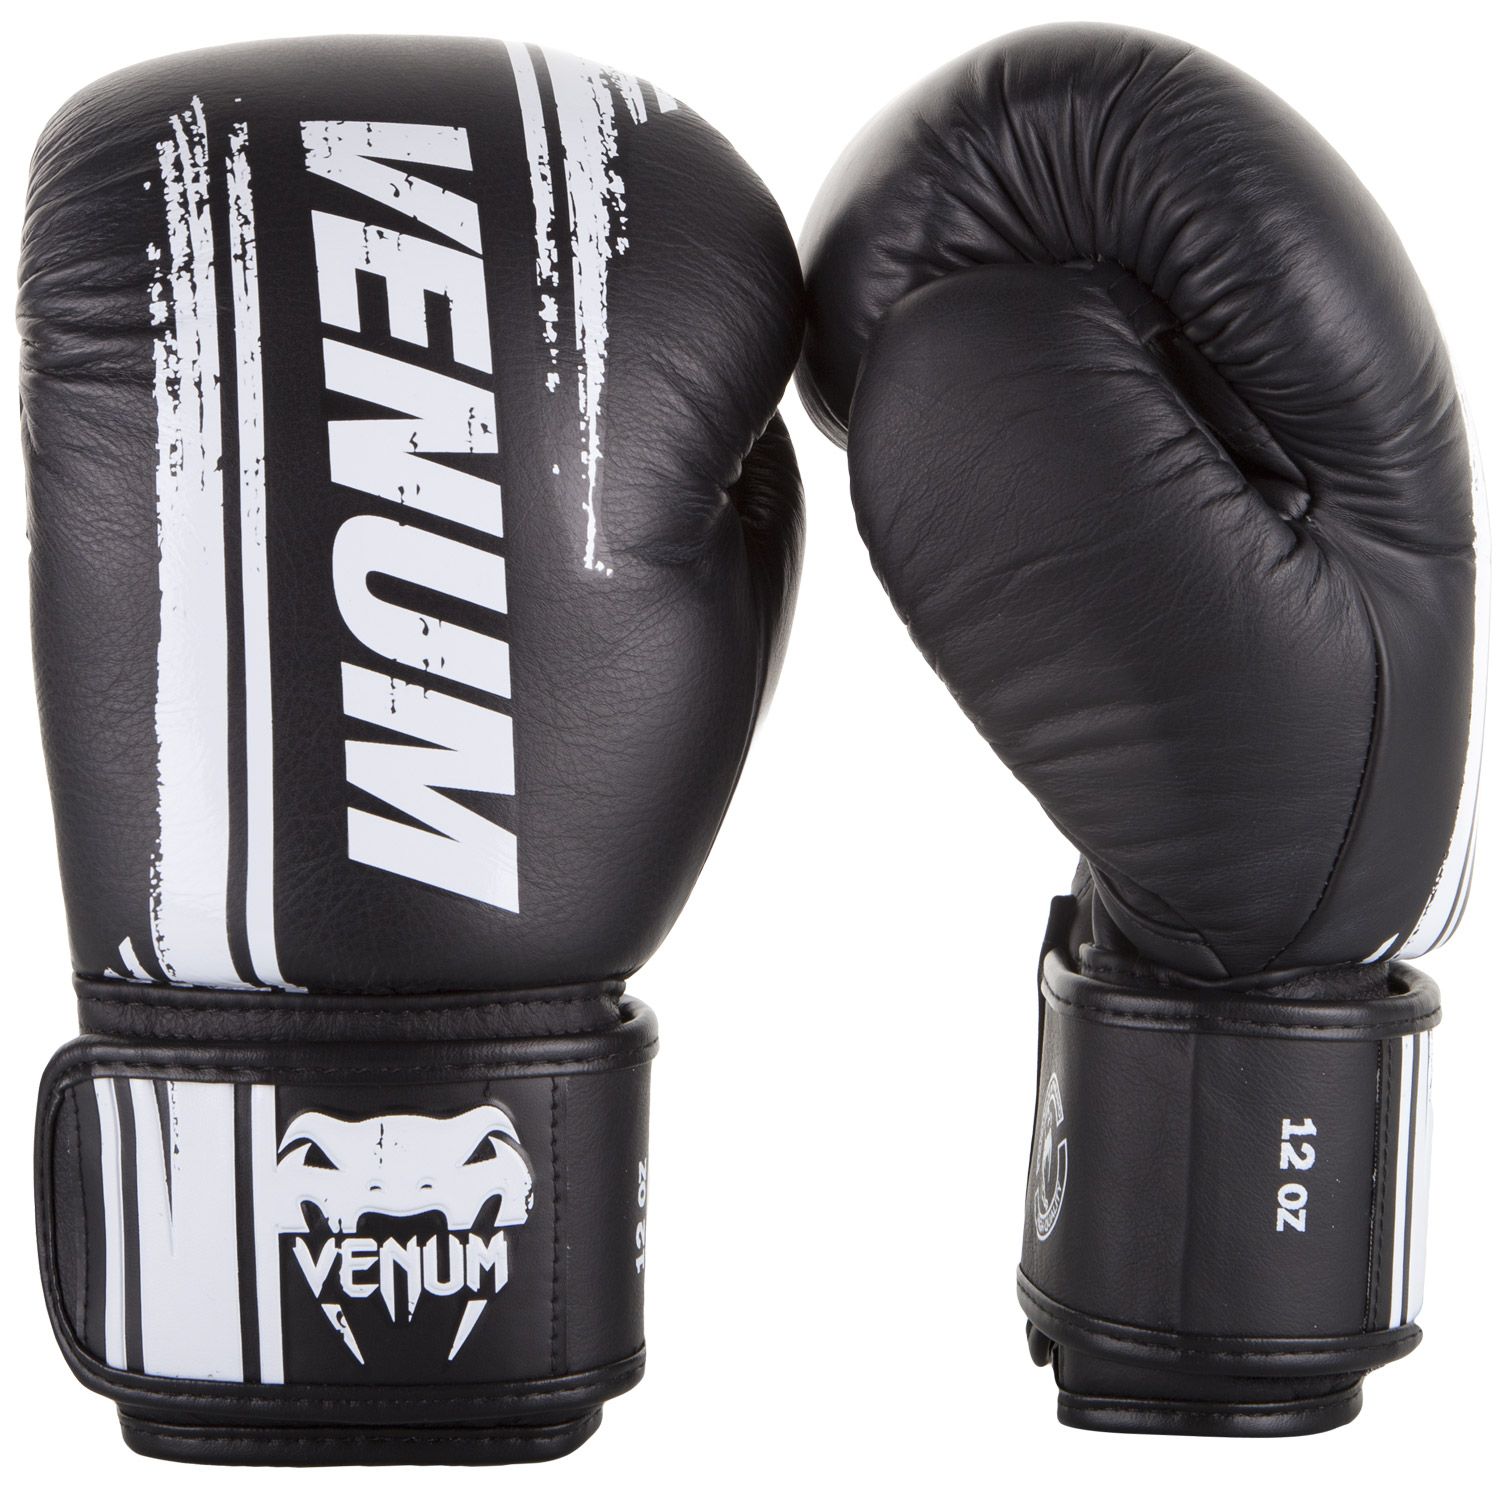 Boxerské rukavice Bangkok Spirit - kůže Nappa černé VENUM vel. 14 oz